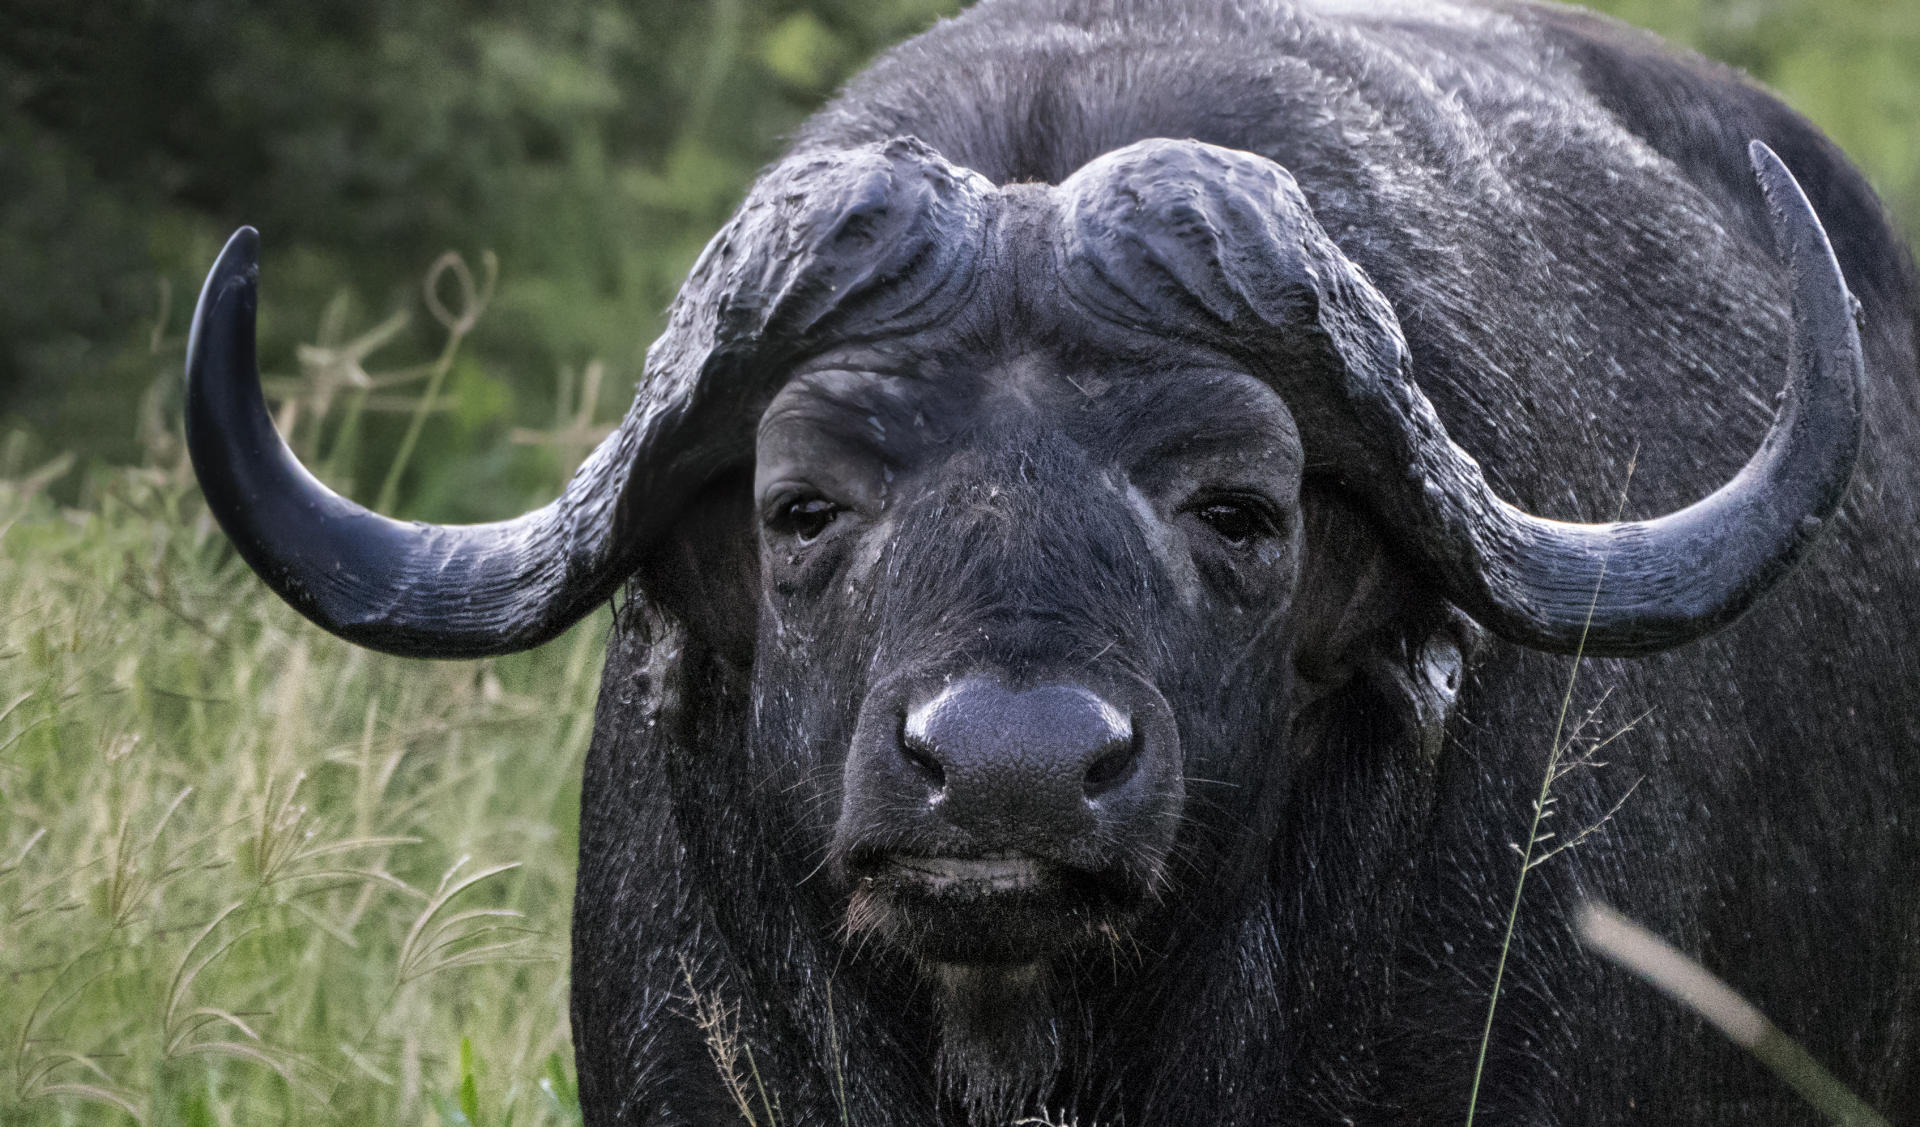 Old Cape Buffalo